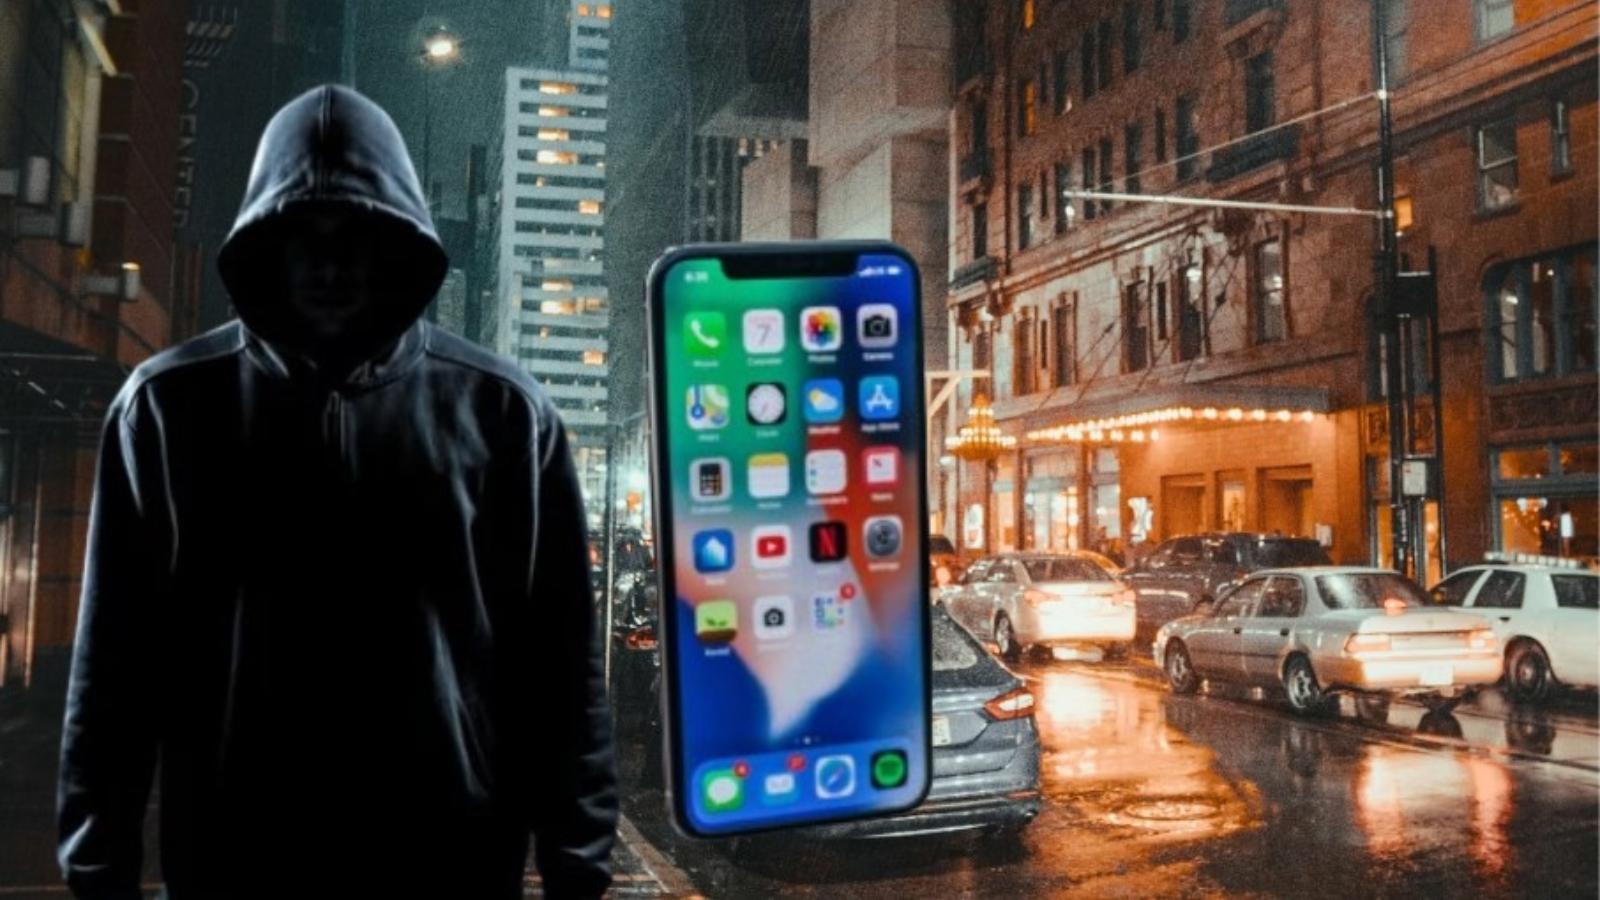 iPhone theft